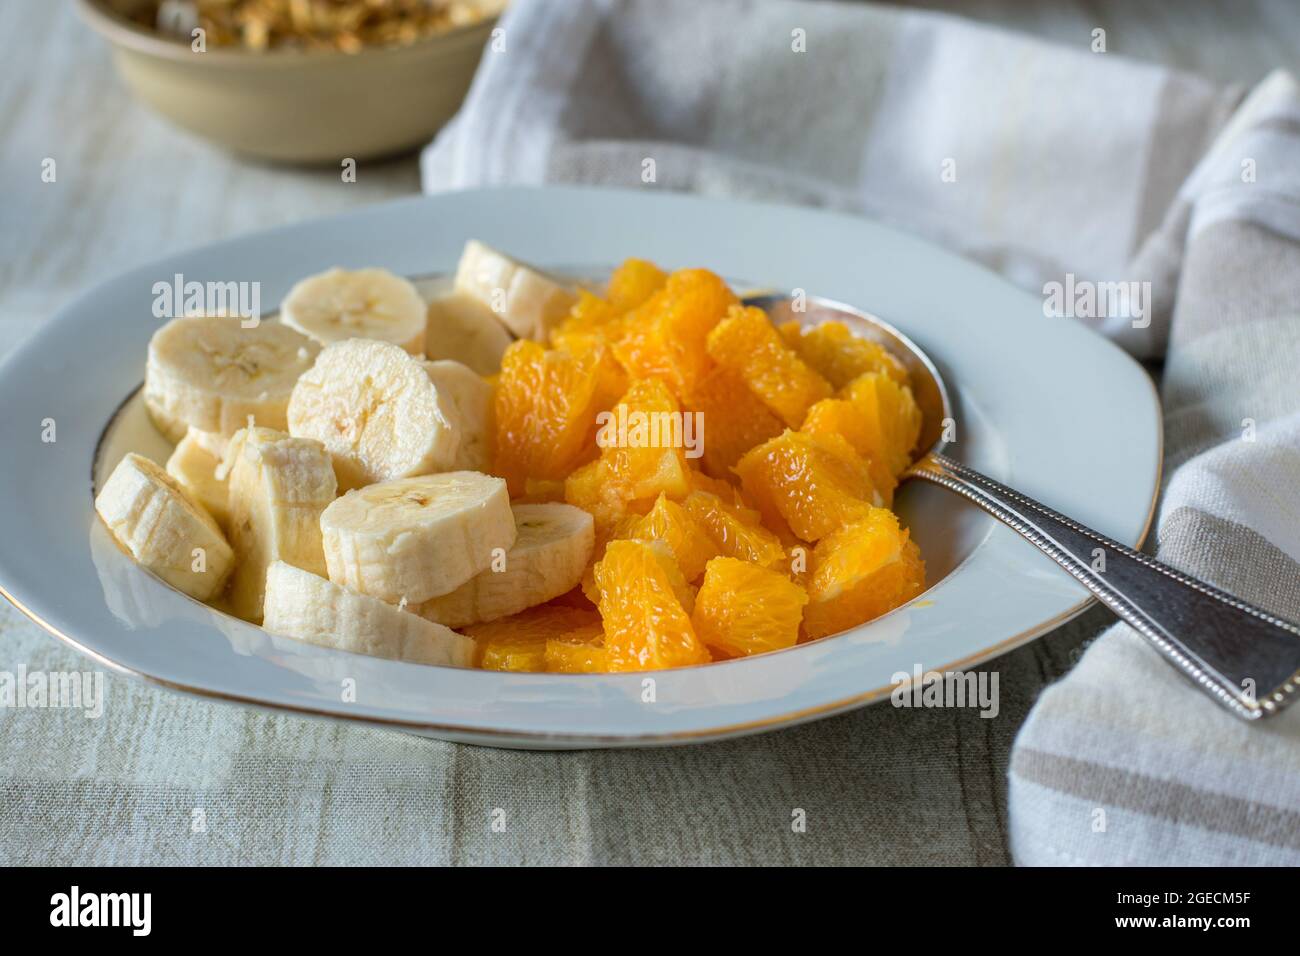 Un piatto con arance e banane tritate su sfondo chiaro del tavolo Foto Stock